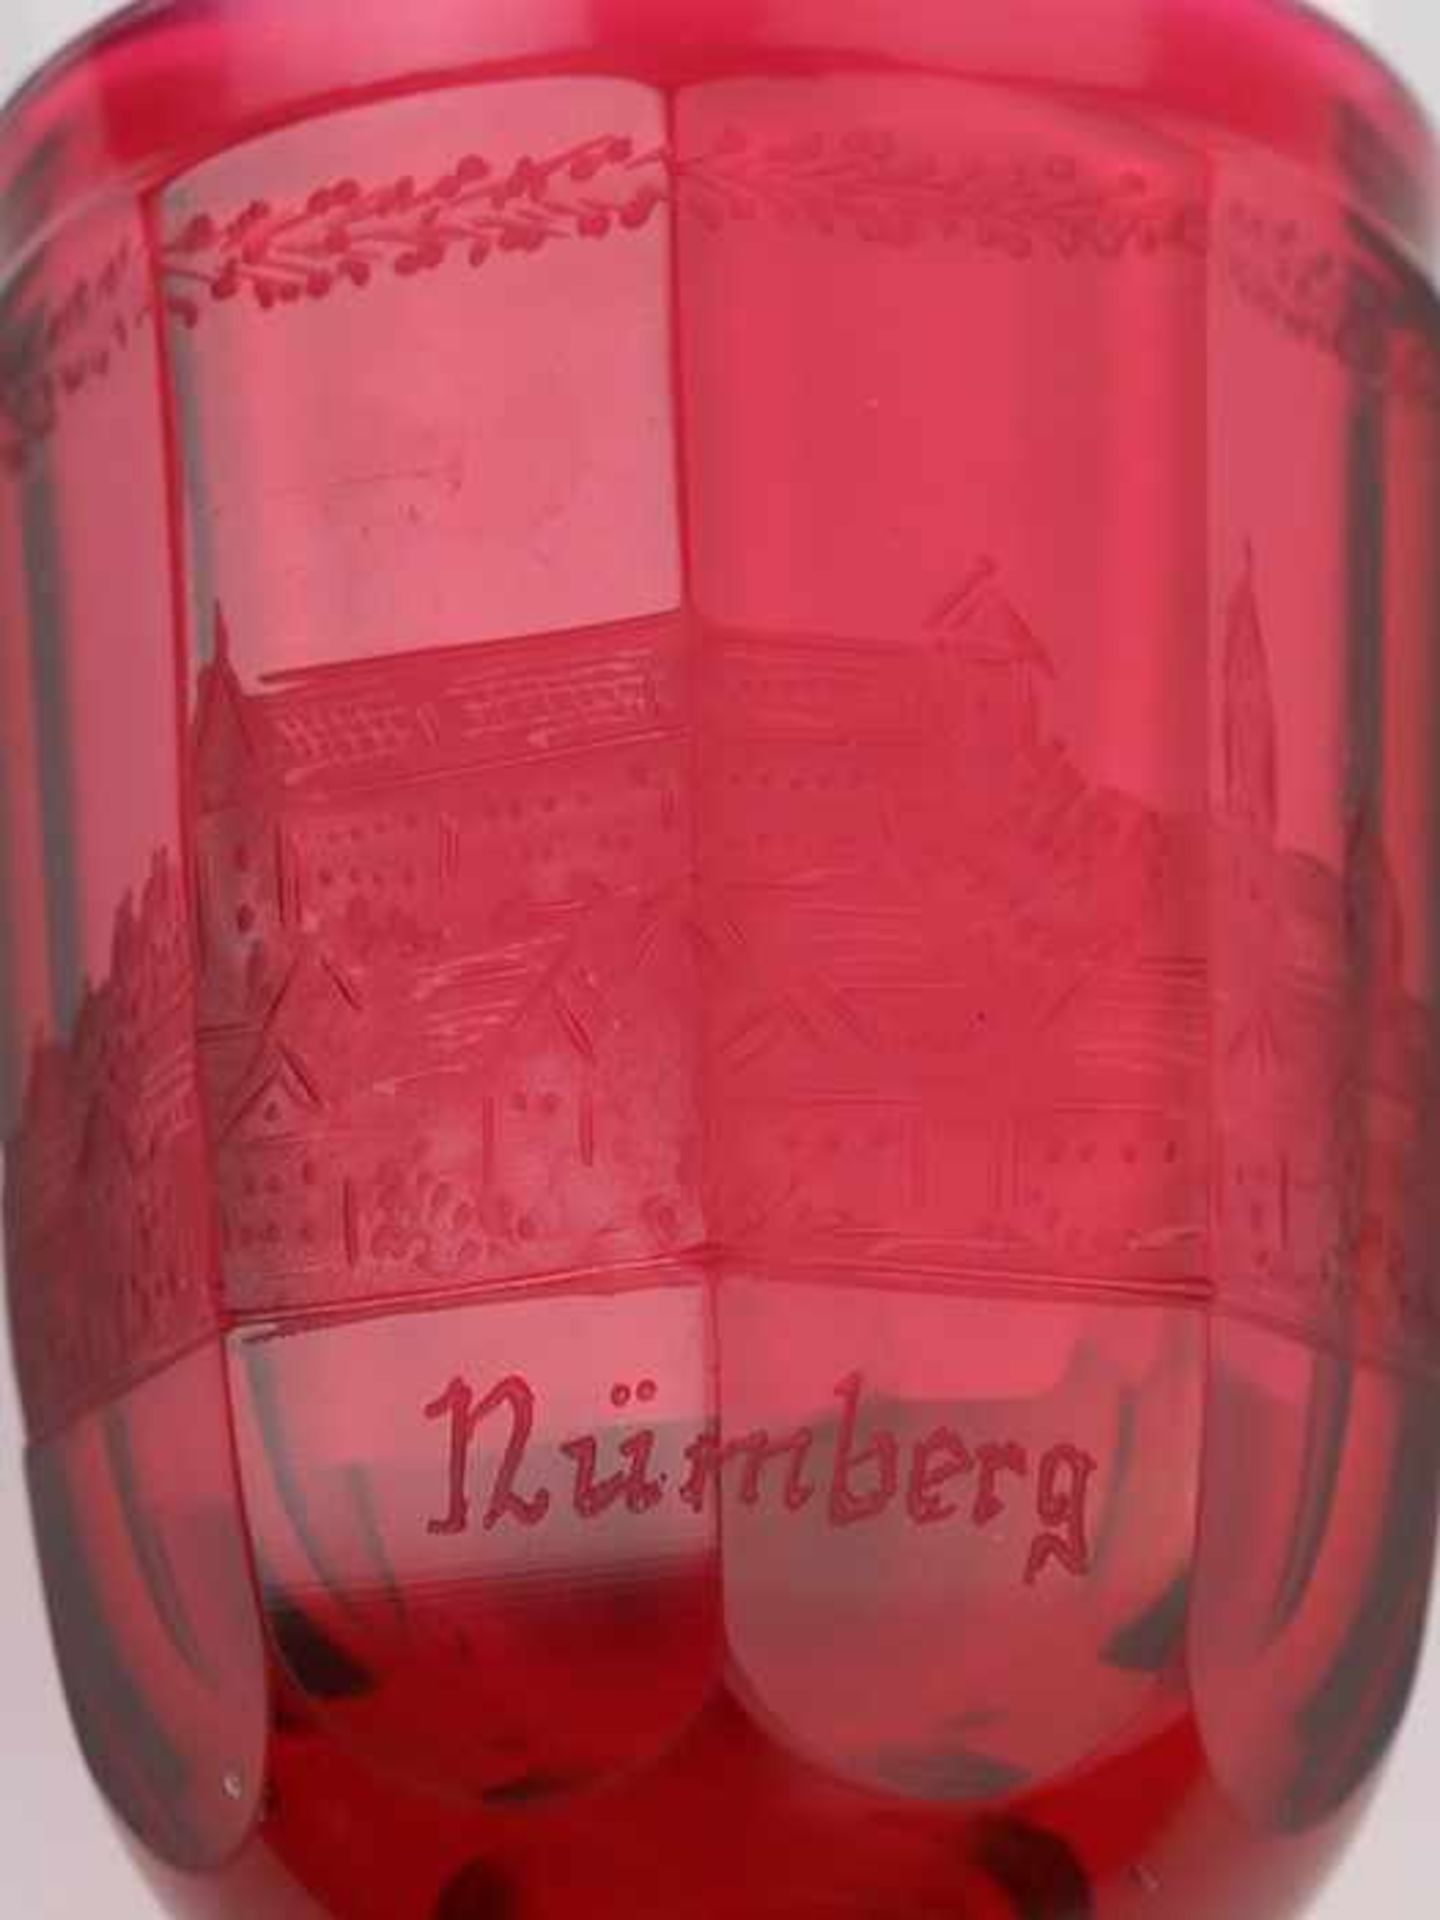 Andenkenbecher19. Jh., farbloses u. rubinfarbenes Glas, runder, zweifach gewulsteter Stand, konkaver - Bild 3 aus 8